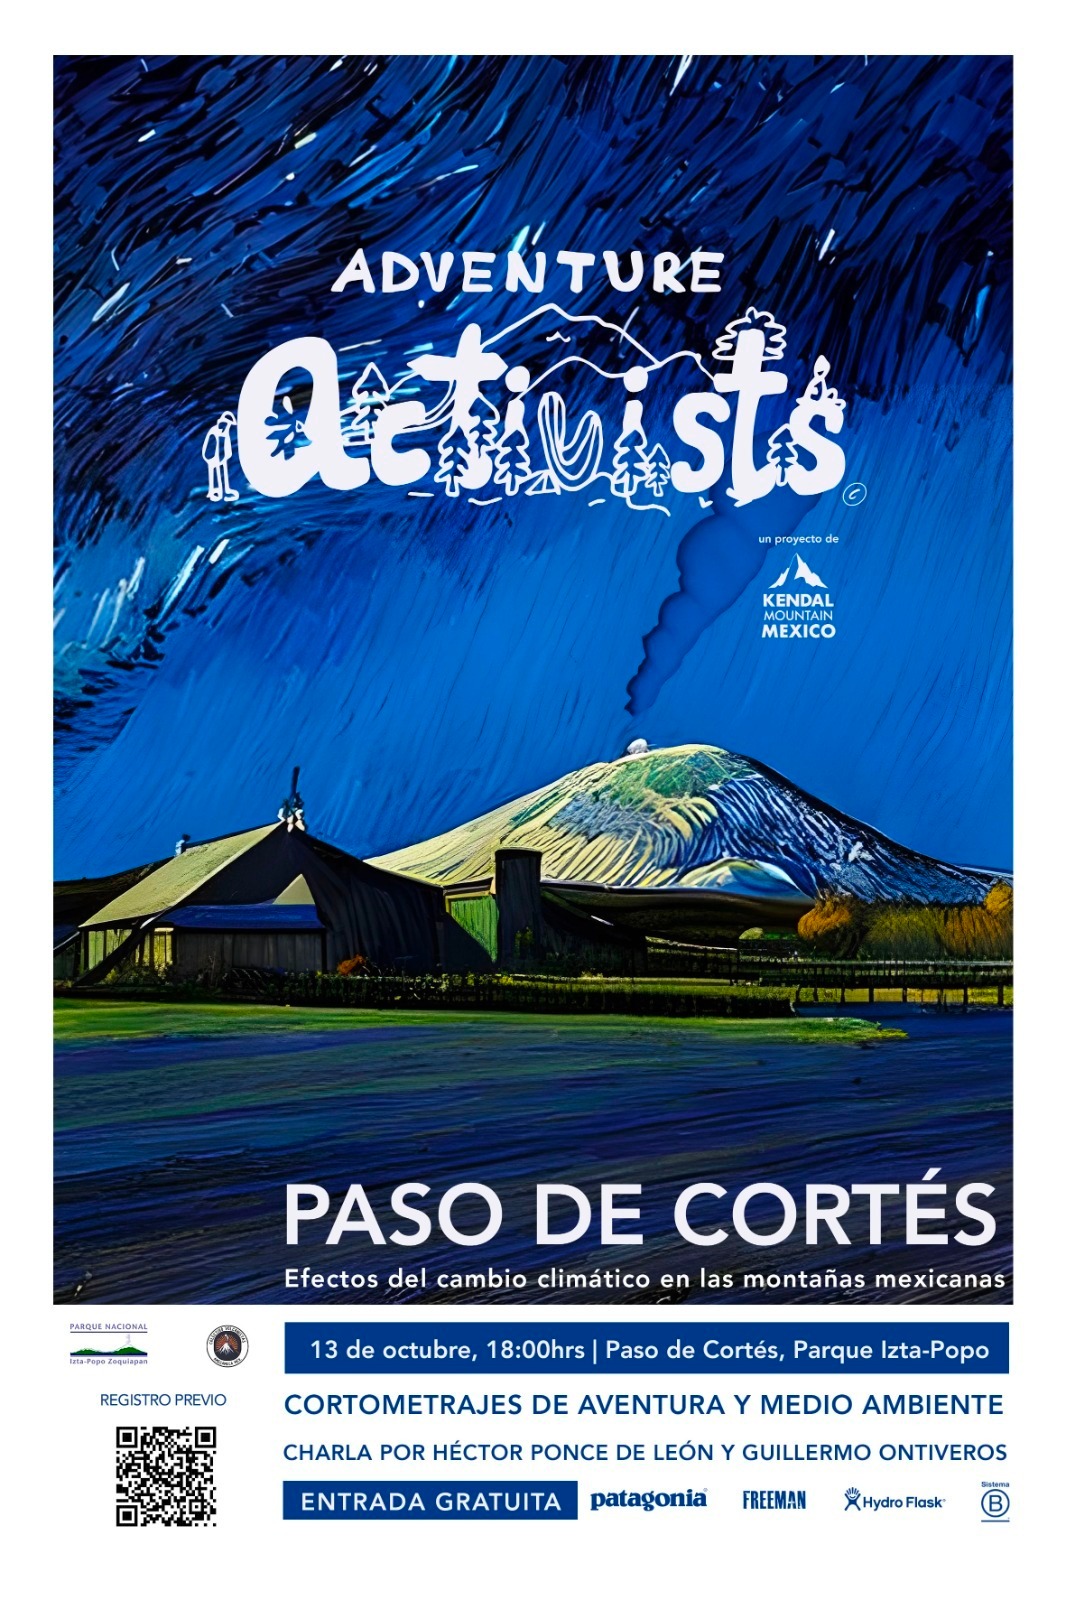 Adventure Activists en Paso de Cortes